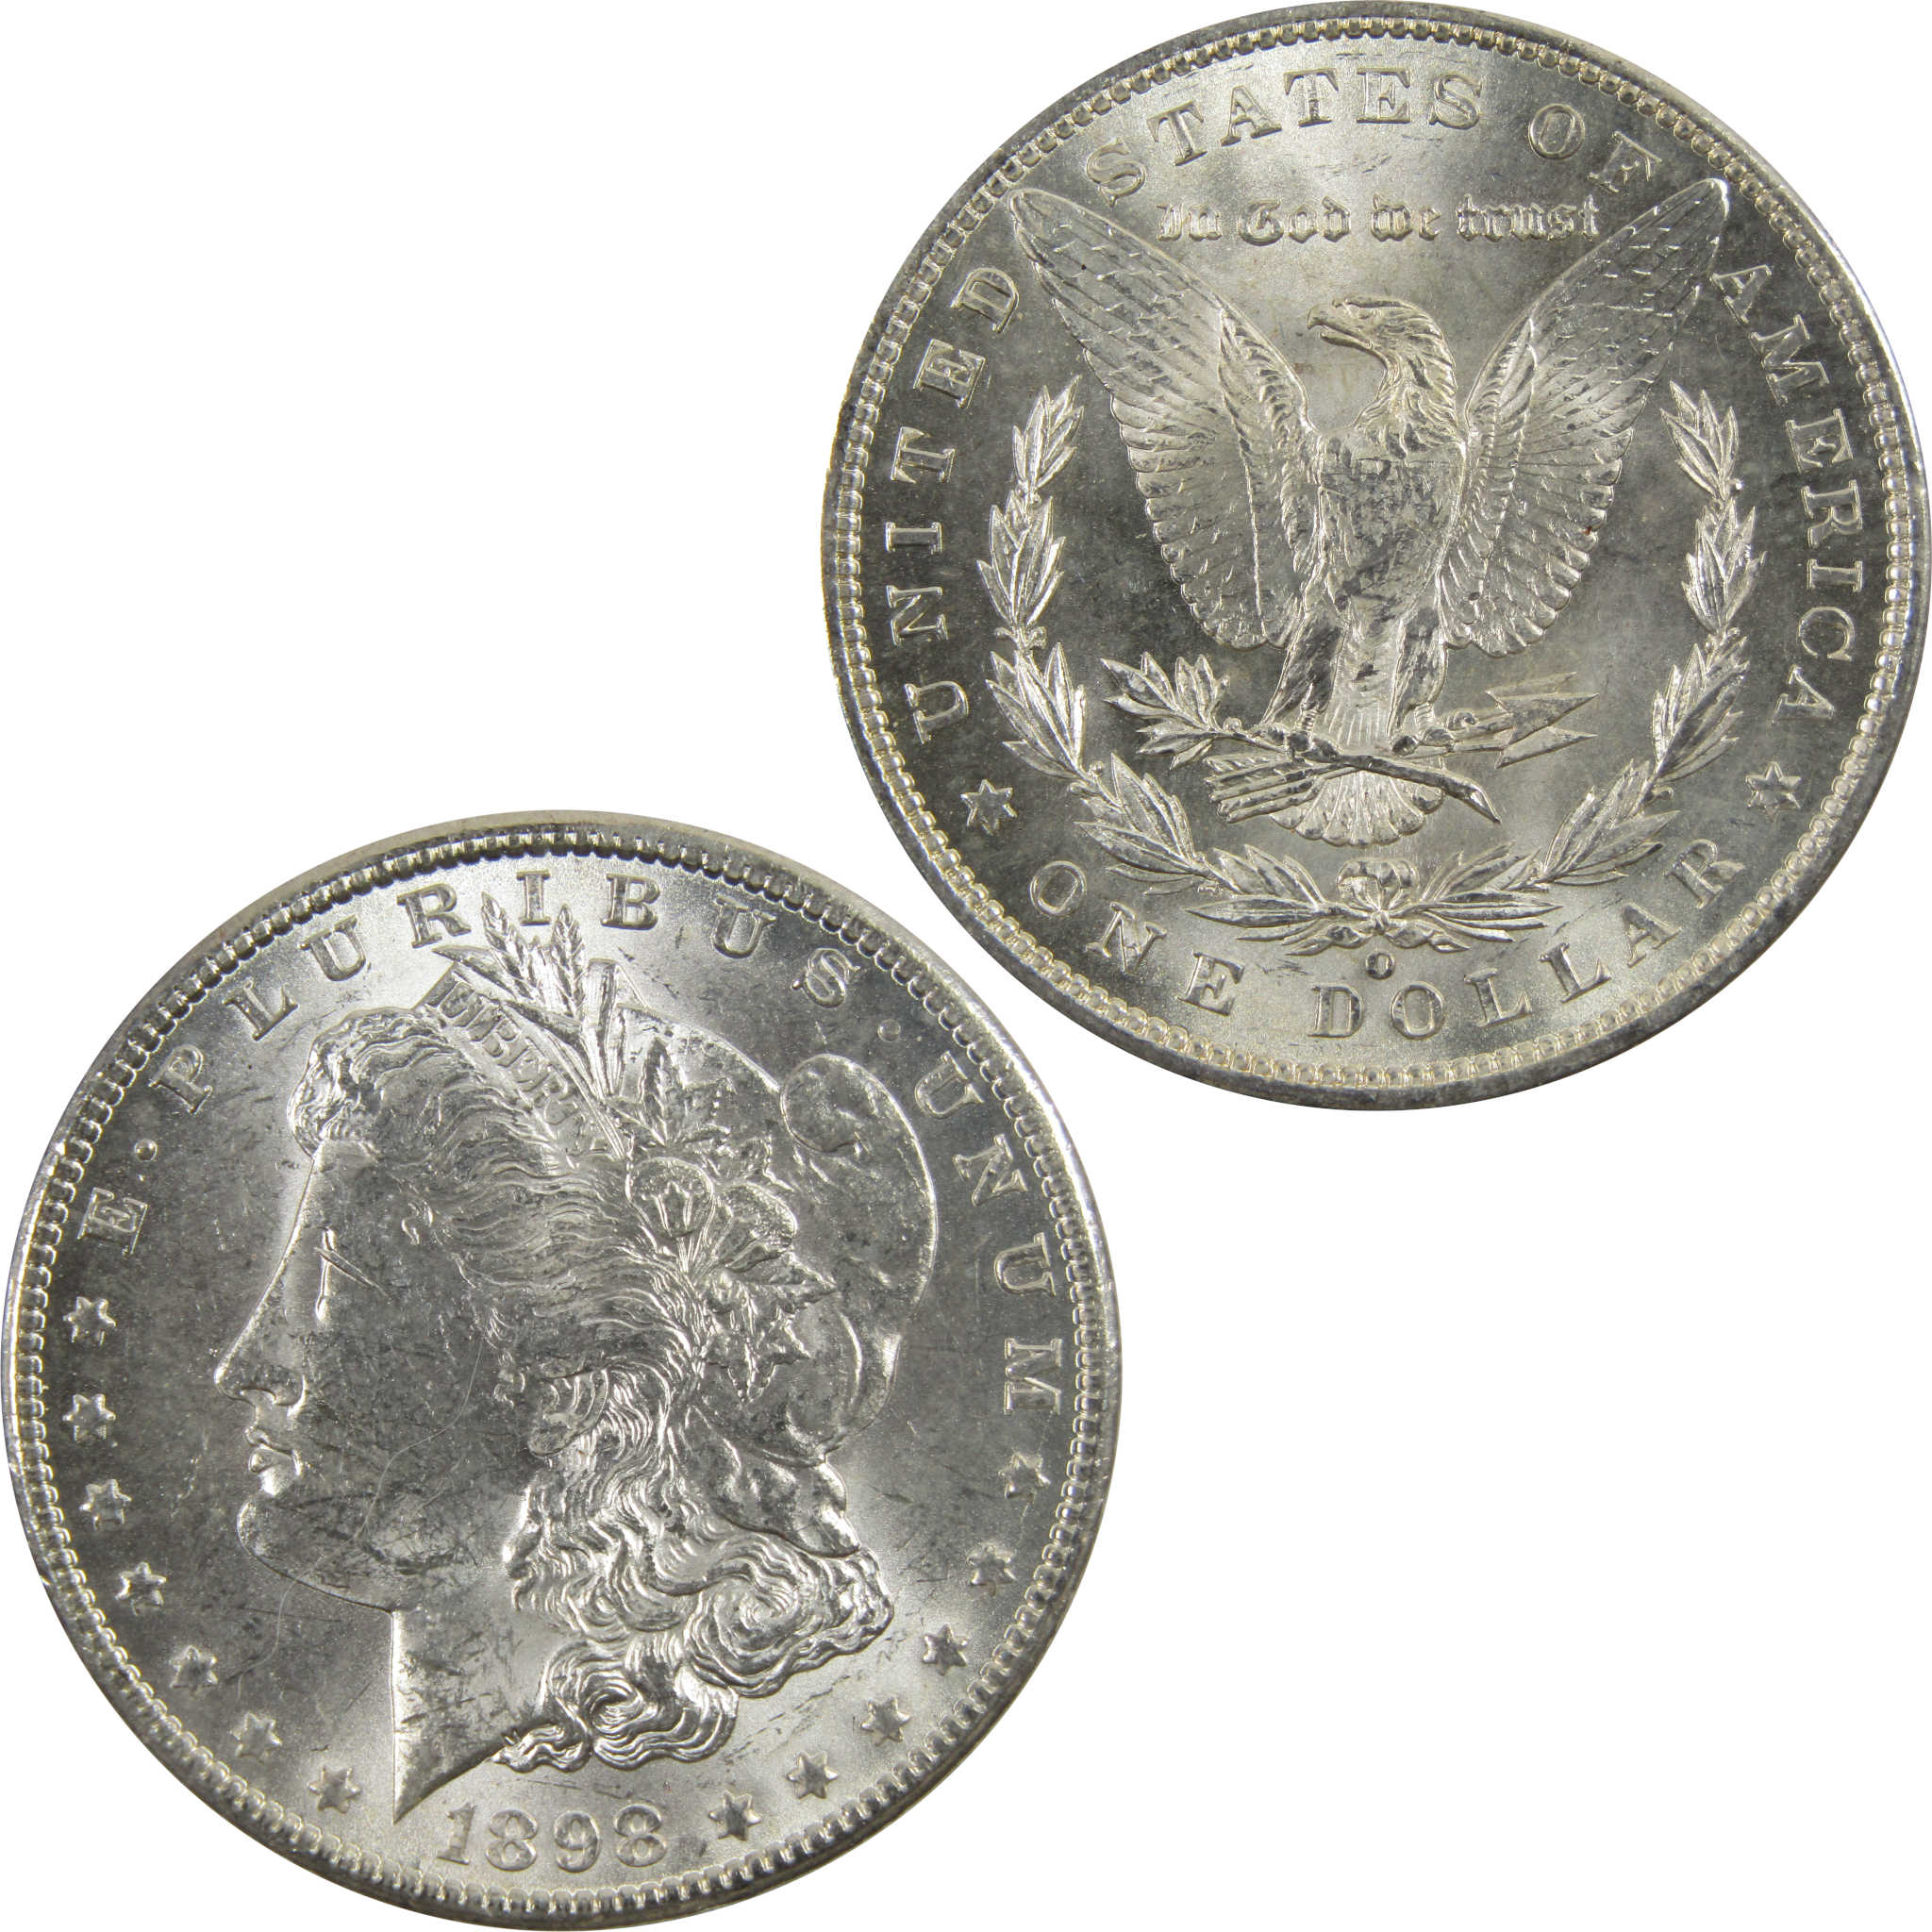 1898 O Morgan Dollar BU Uncirculated 90% Silver $1 Coin SKU:I5259 - Morgan coin - Morgan silver dollar - Morgan silver dollar for sale - Profile Coins &amp; Collectibles